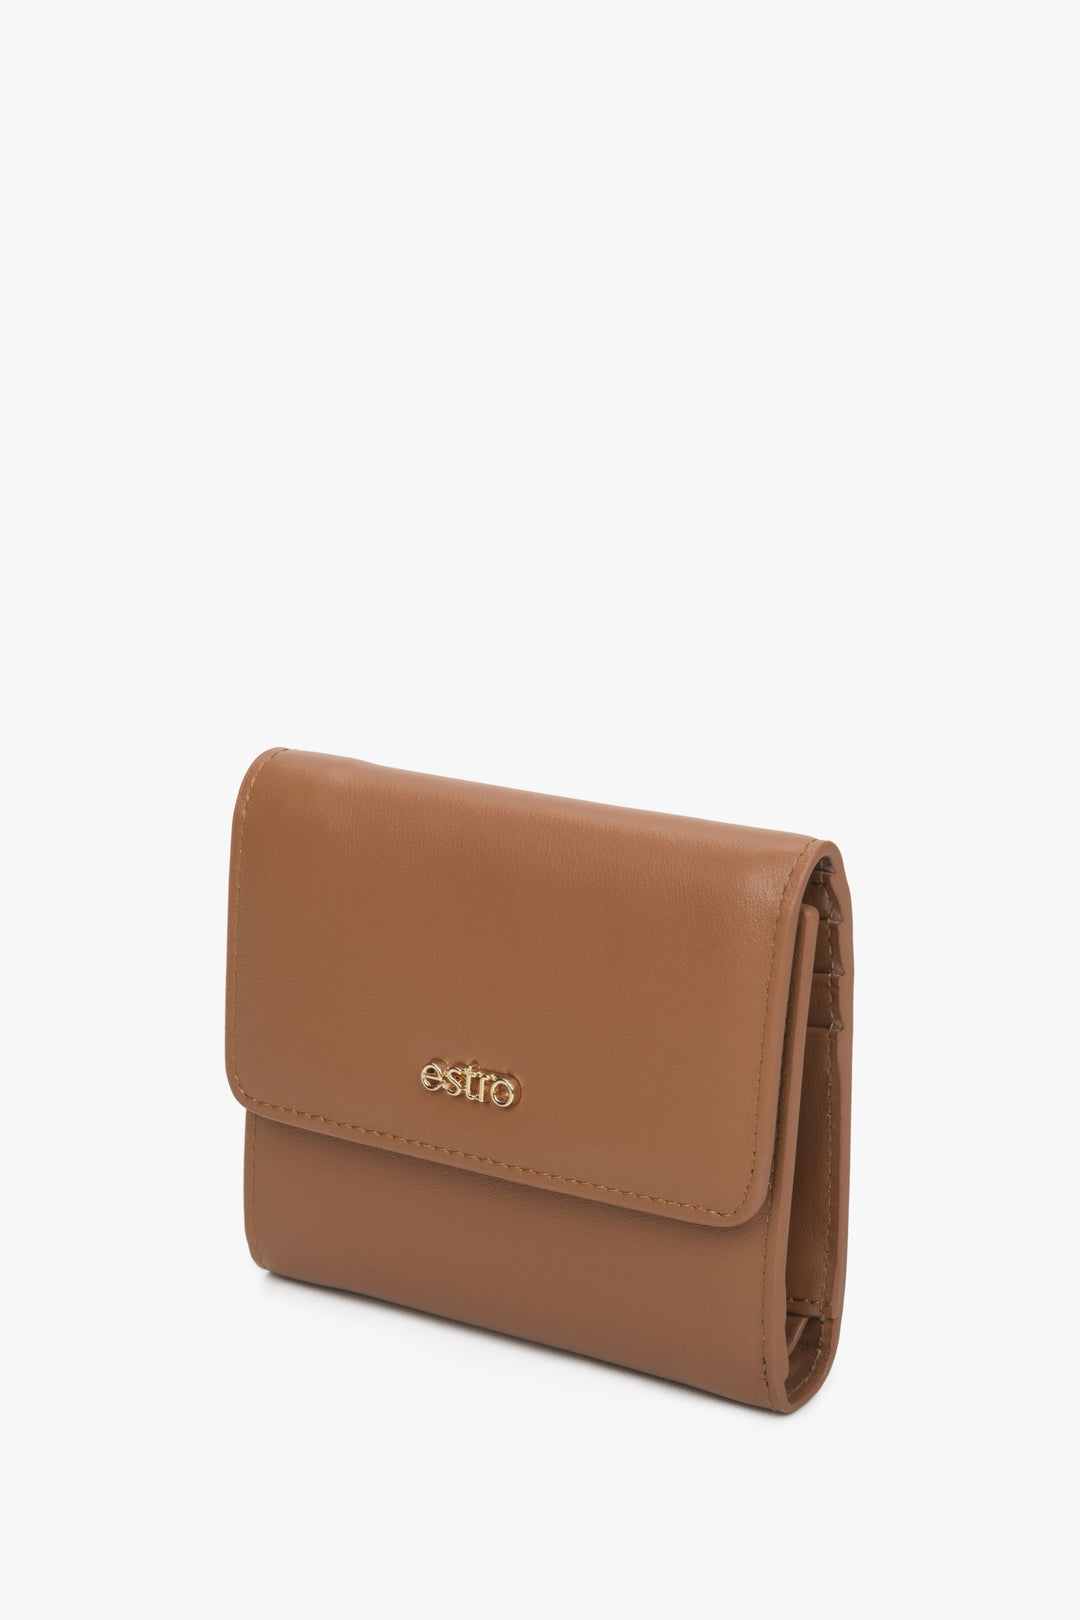 A handy brown women's wallet by Estro.